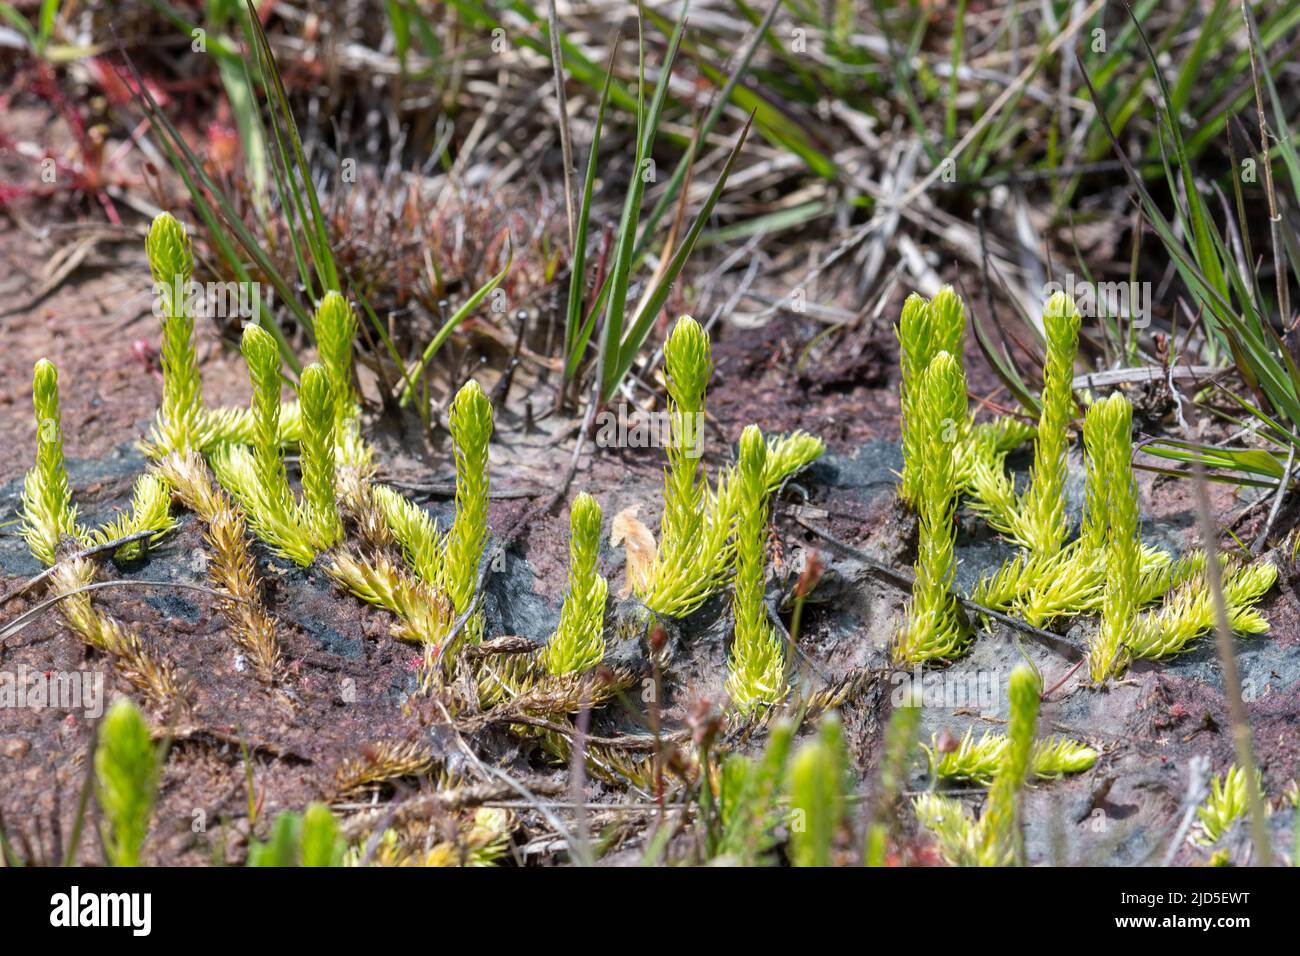 Clubmoss de marais (Lycopodiella inundata) dans la réserve naturelle nationale Thurley Common, une plante en voie de disparition d'habitat humide de santé Banque D'Images